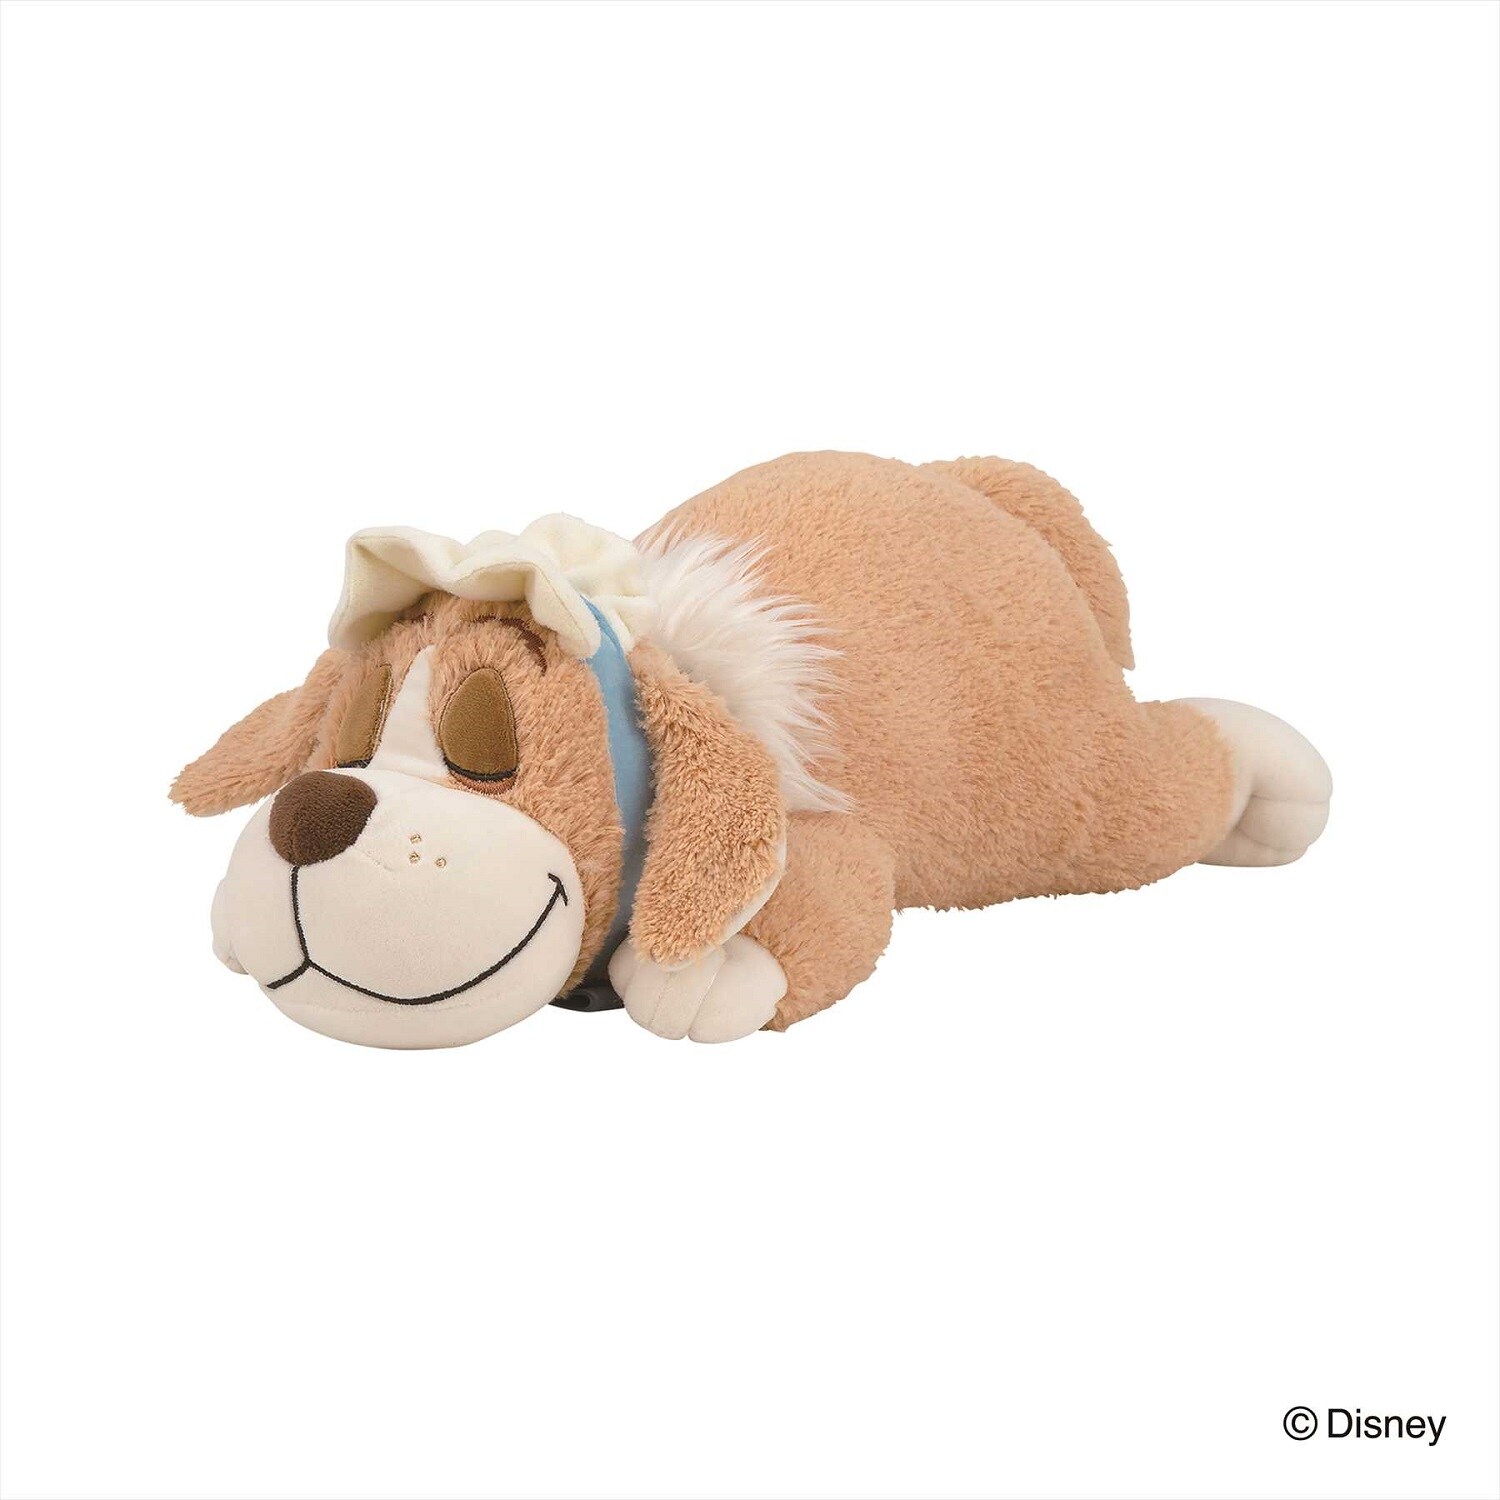 【ディズニー/Disney】おもちのような柔らかさの抱き枕「ナナ」